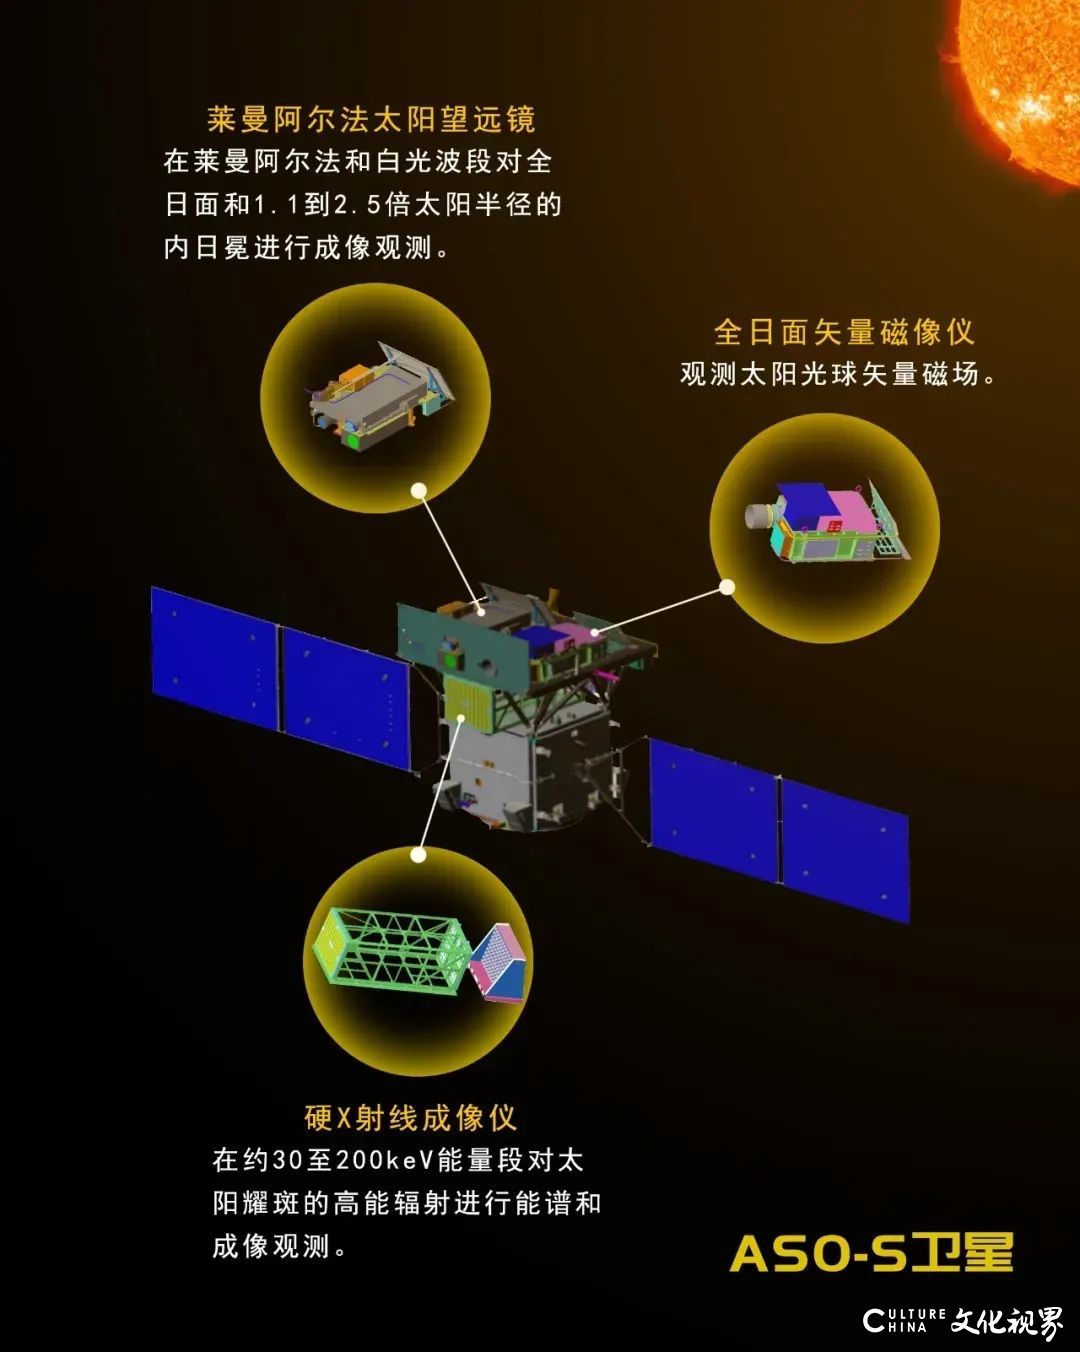 中国人自己的探日卫星有望明年发射，将详细记录“太阳风暴”